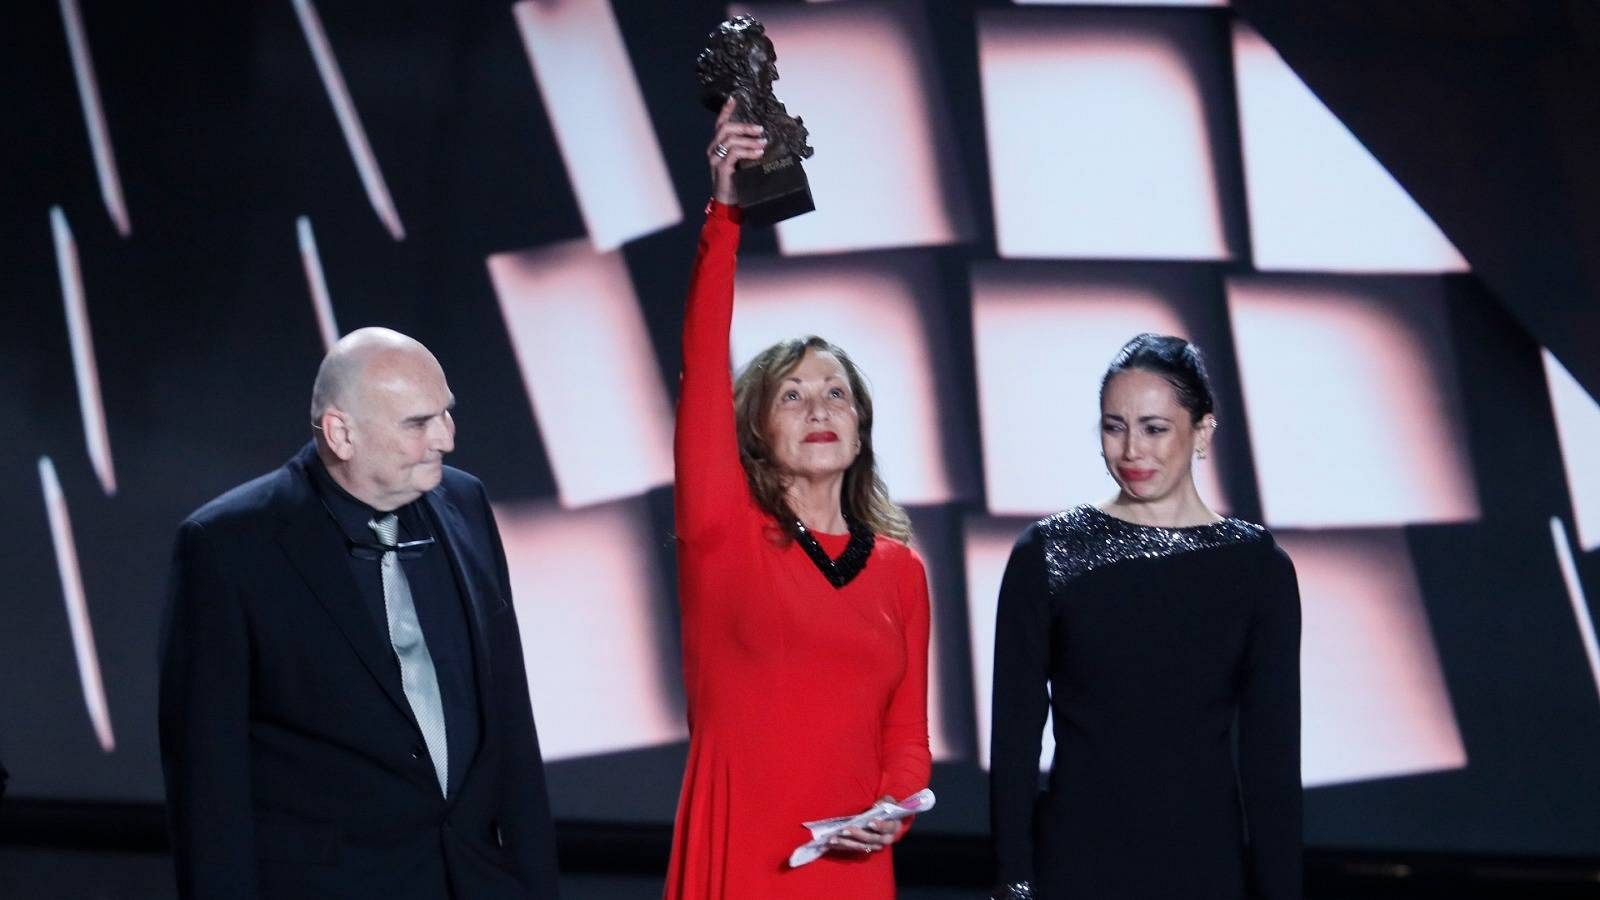  La familia de Carlos Saura recibe el Goya de Honor ante un público emocionado y en pie: "Nos enseñó que la cultura es lo más importante"